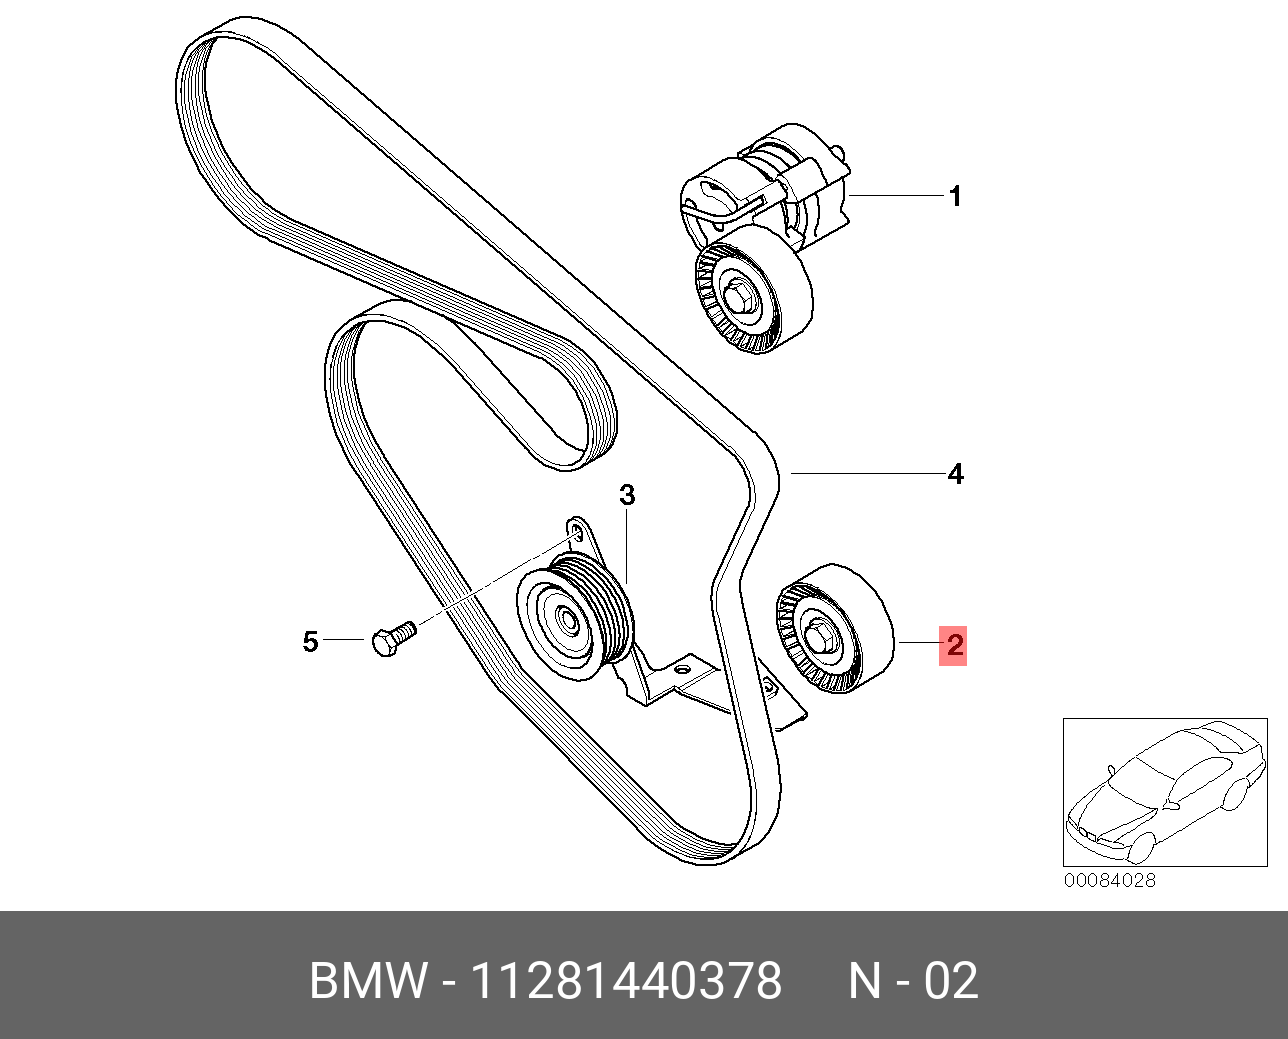 Ролик промежуточный навесного оборудования - BMW 11 28 1 440 378